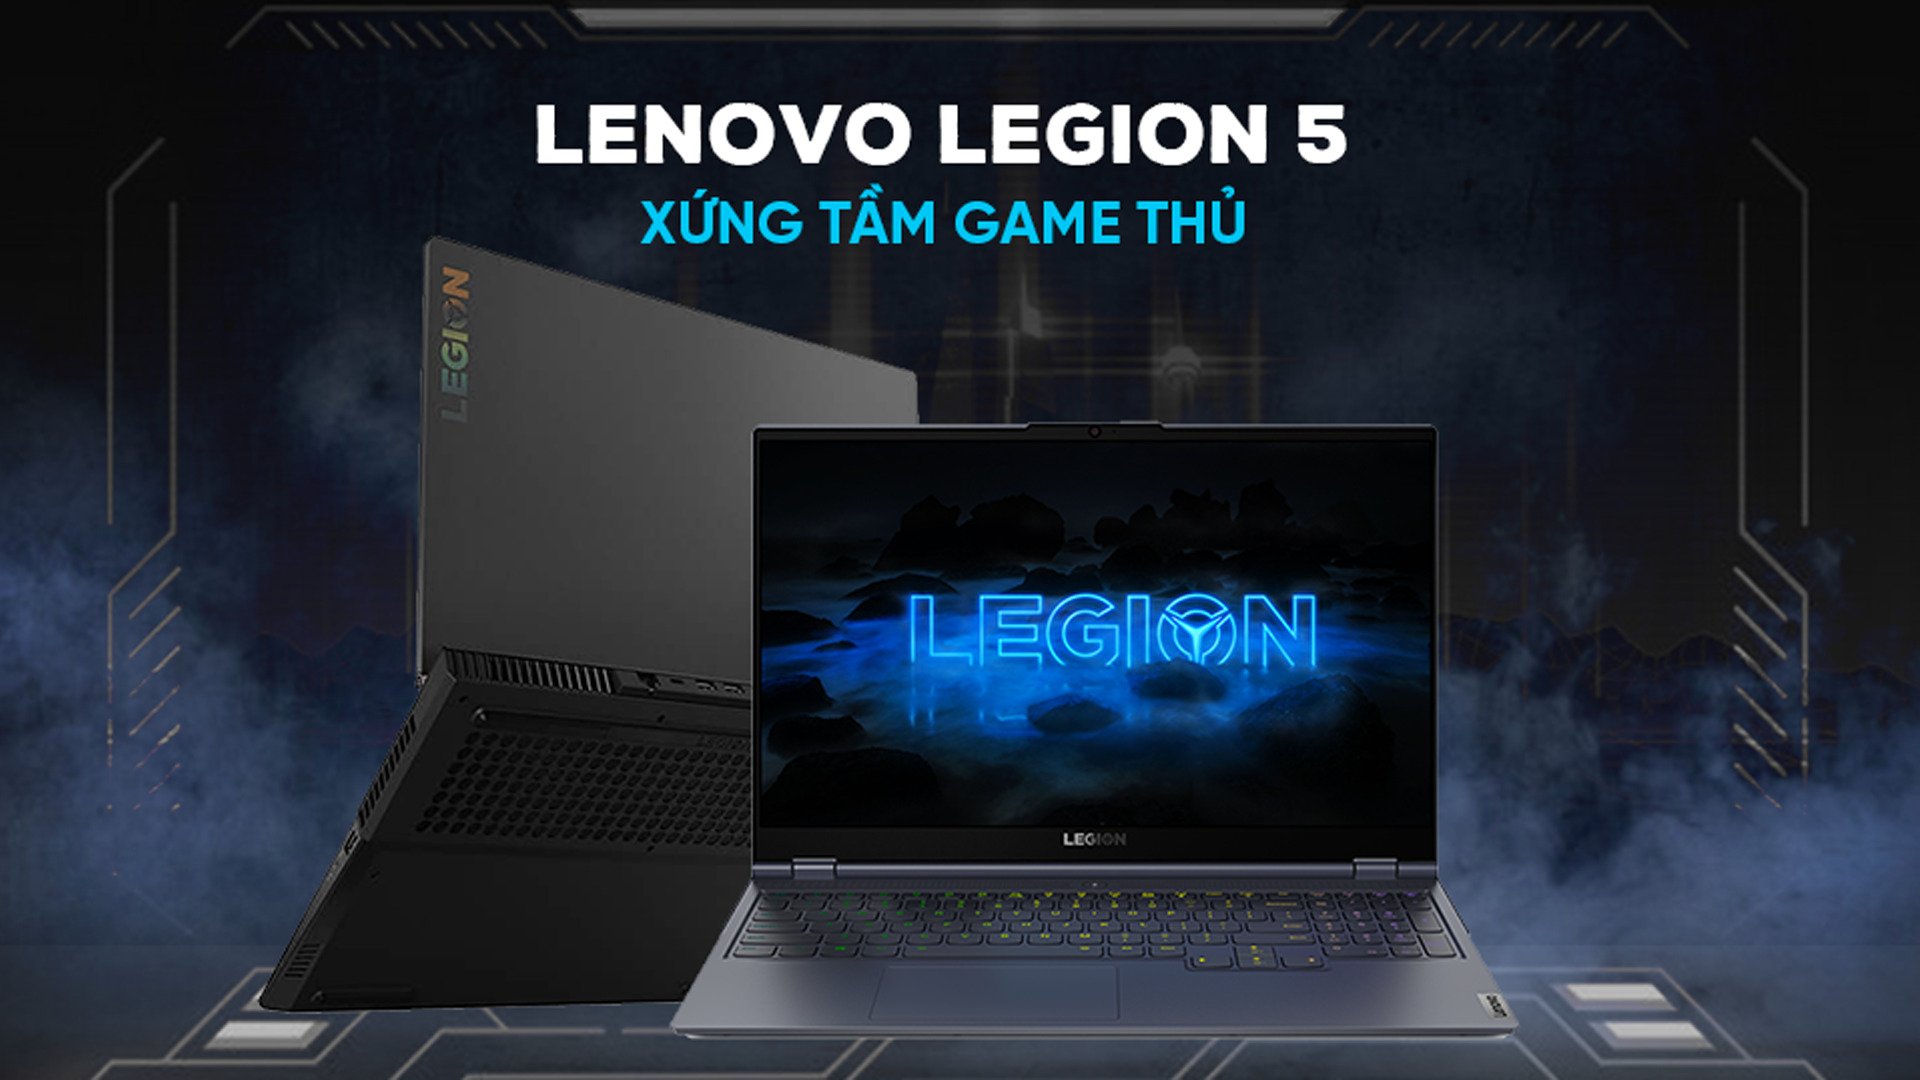 Laptop Lenovo Legion 5 là một chiếc máy tính đa năng, phổ biến và được ưa chuộng với các game thủ và những người làm công việc yêu cầu đòi hỏi khả năng xử lý cao. Với cấu hình mạnh mẽ và bắt mắt, chiếc laptop Lenovo Legion 5 không chỉ làm bạn thỏa mãn với giải trí mà còn giúp bạn tiến tới thành công trong công việc.